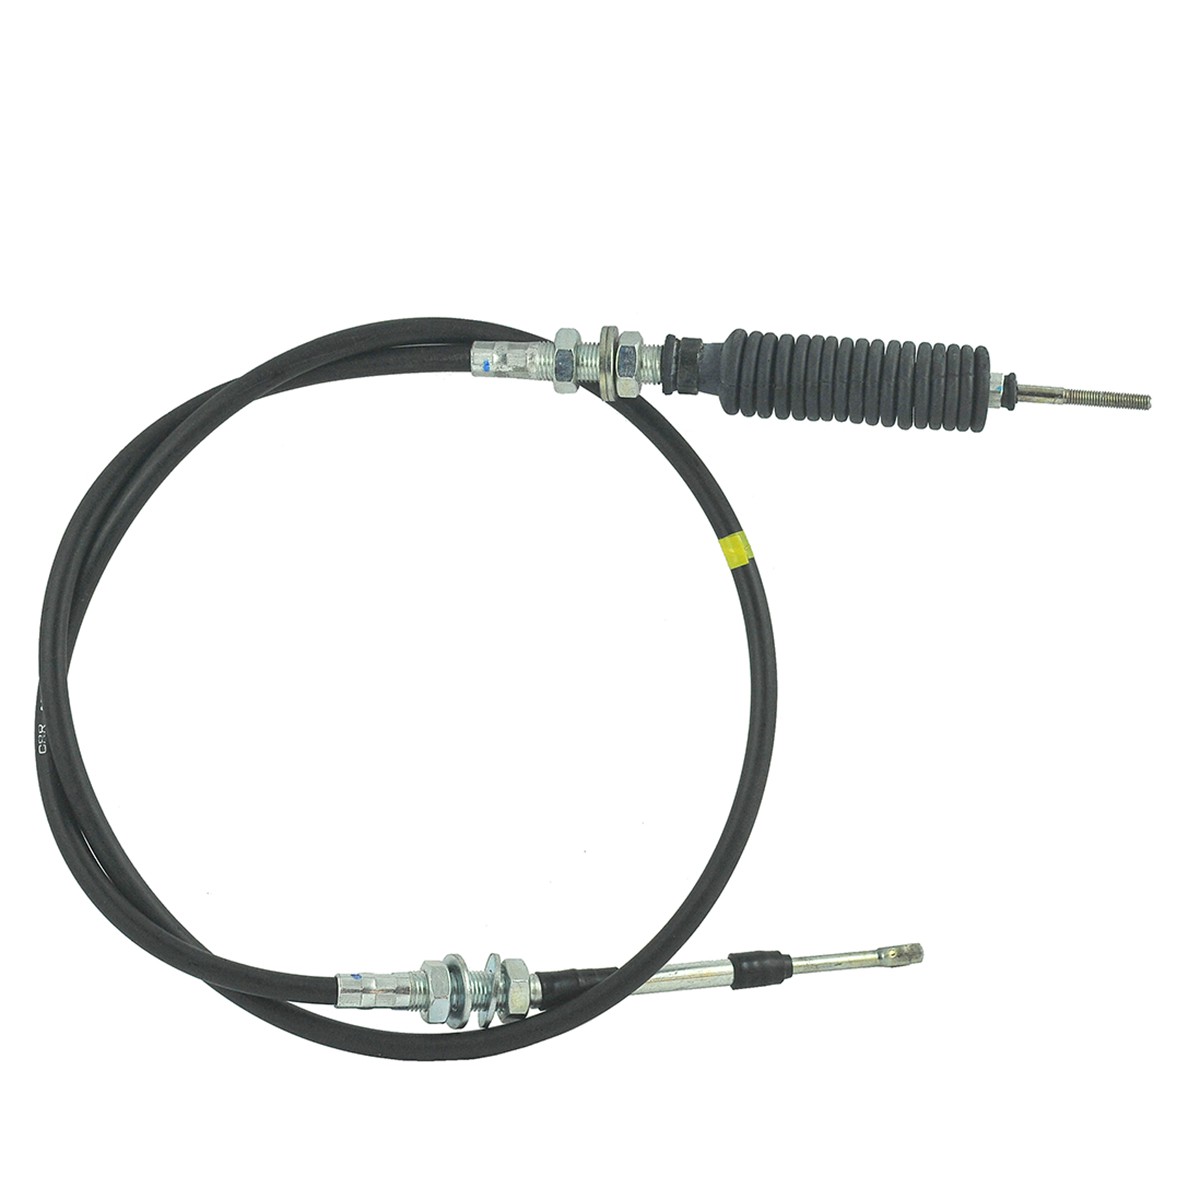 Cable del acelerador / 1350 mm / Kubota M5040/M5140/M6040/M7040/M7060/M8540/M9540 / 3C085-82970 / 5-25-105-37